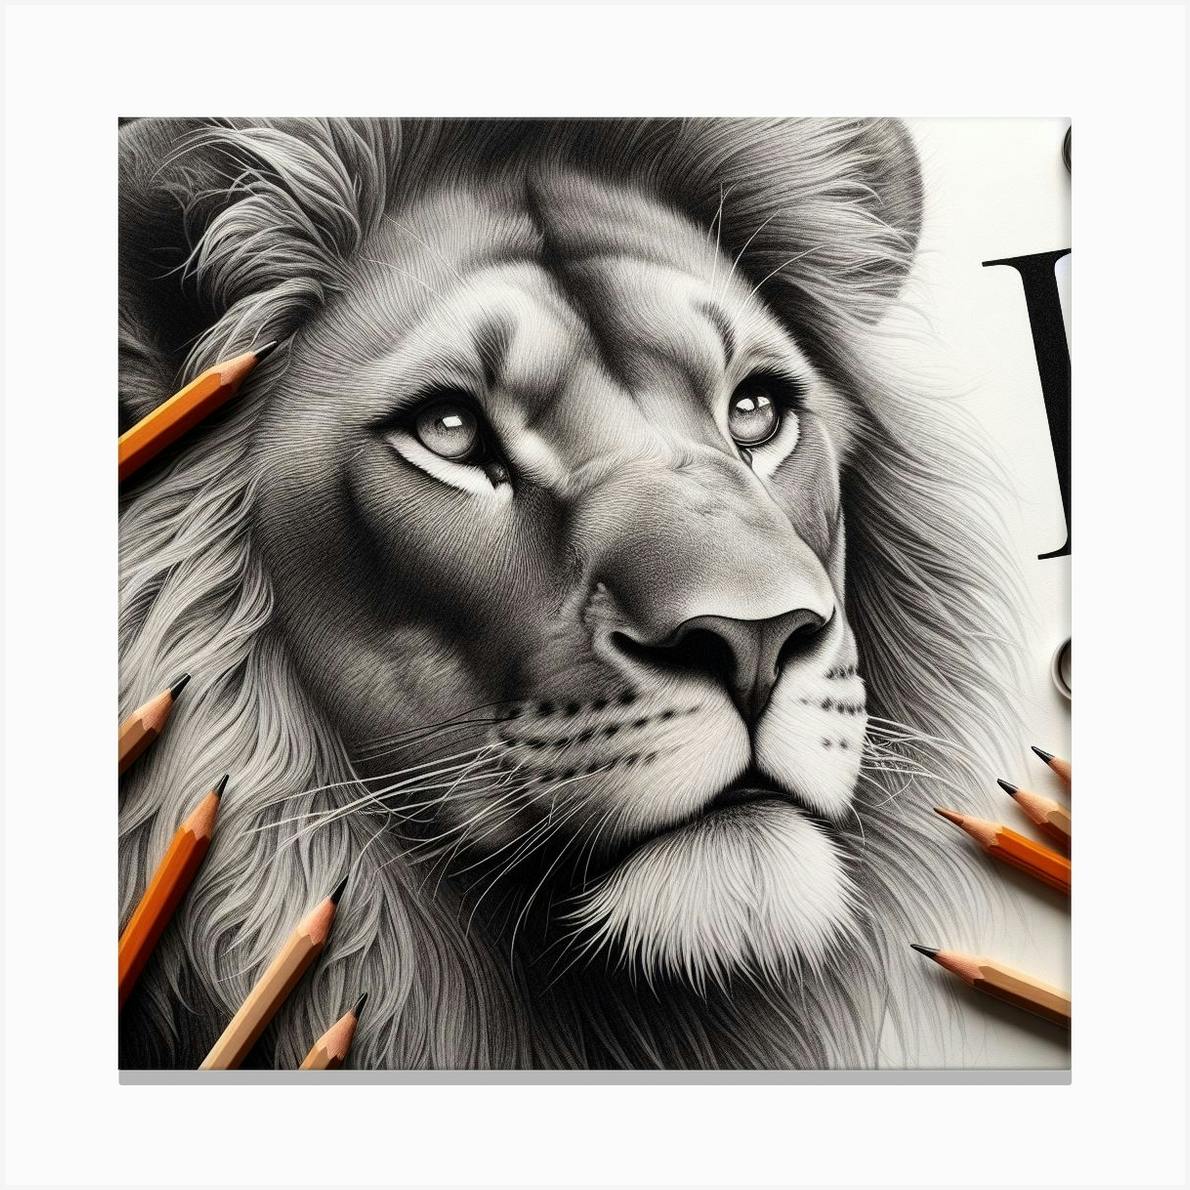 Lion icon Stock Photos, Royalty Free Lion icon Images | Depositphotos